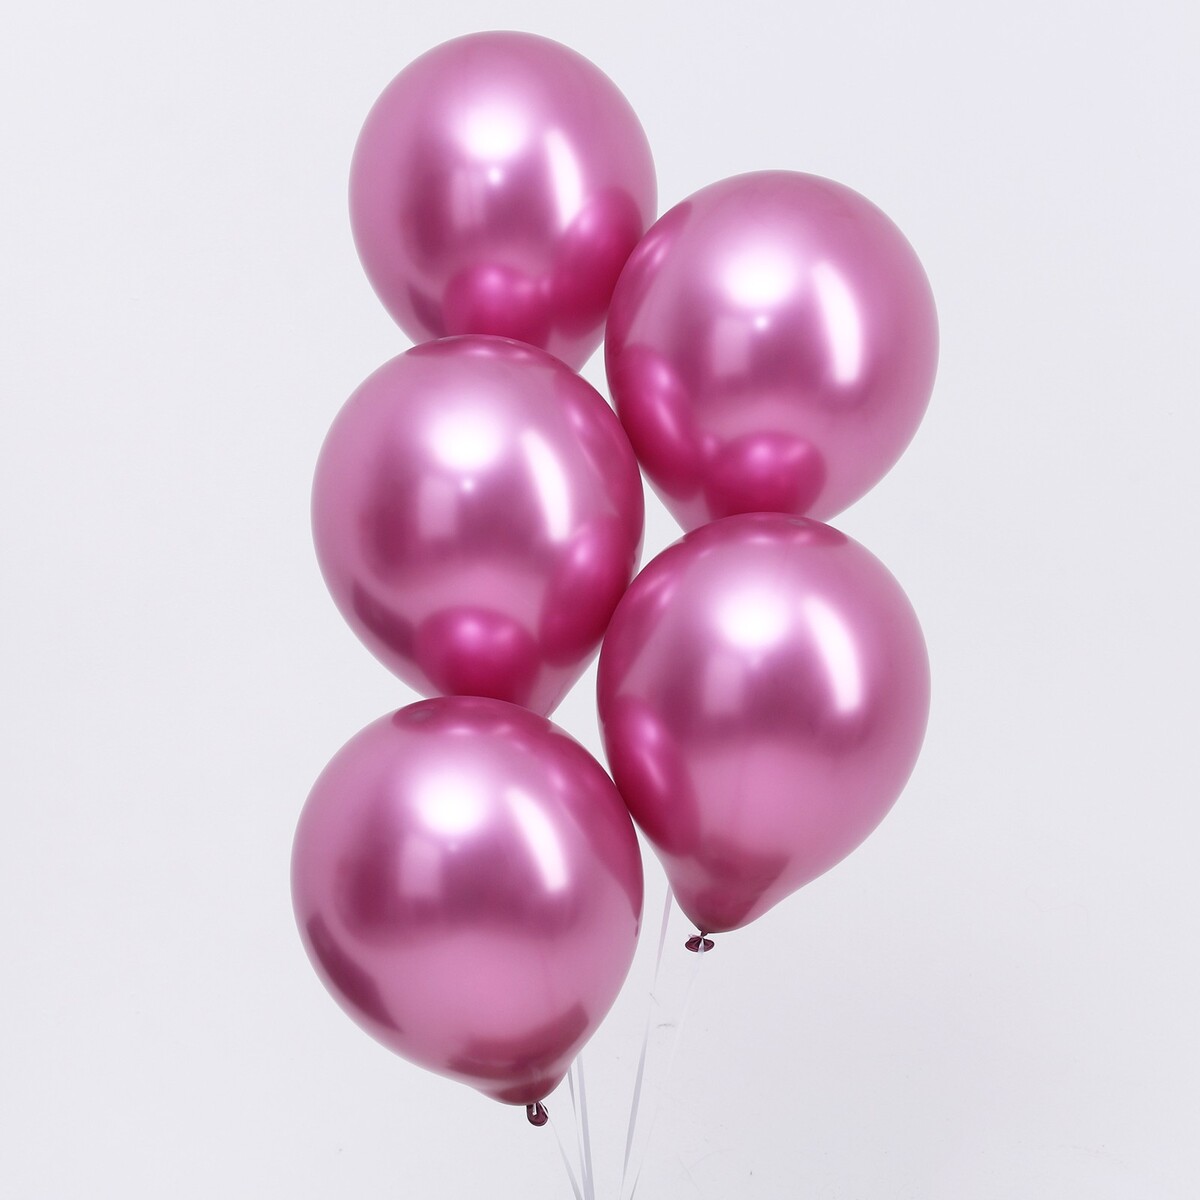 Шар латексный 12“, хром, в наборе 100 шт., цвет насыщенный розовый шар латексный 12“ хром набор 100 шт насыщенный бордо